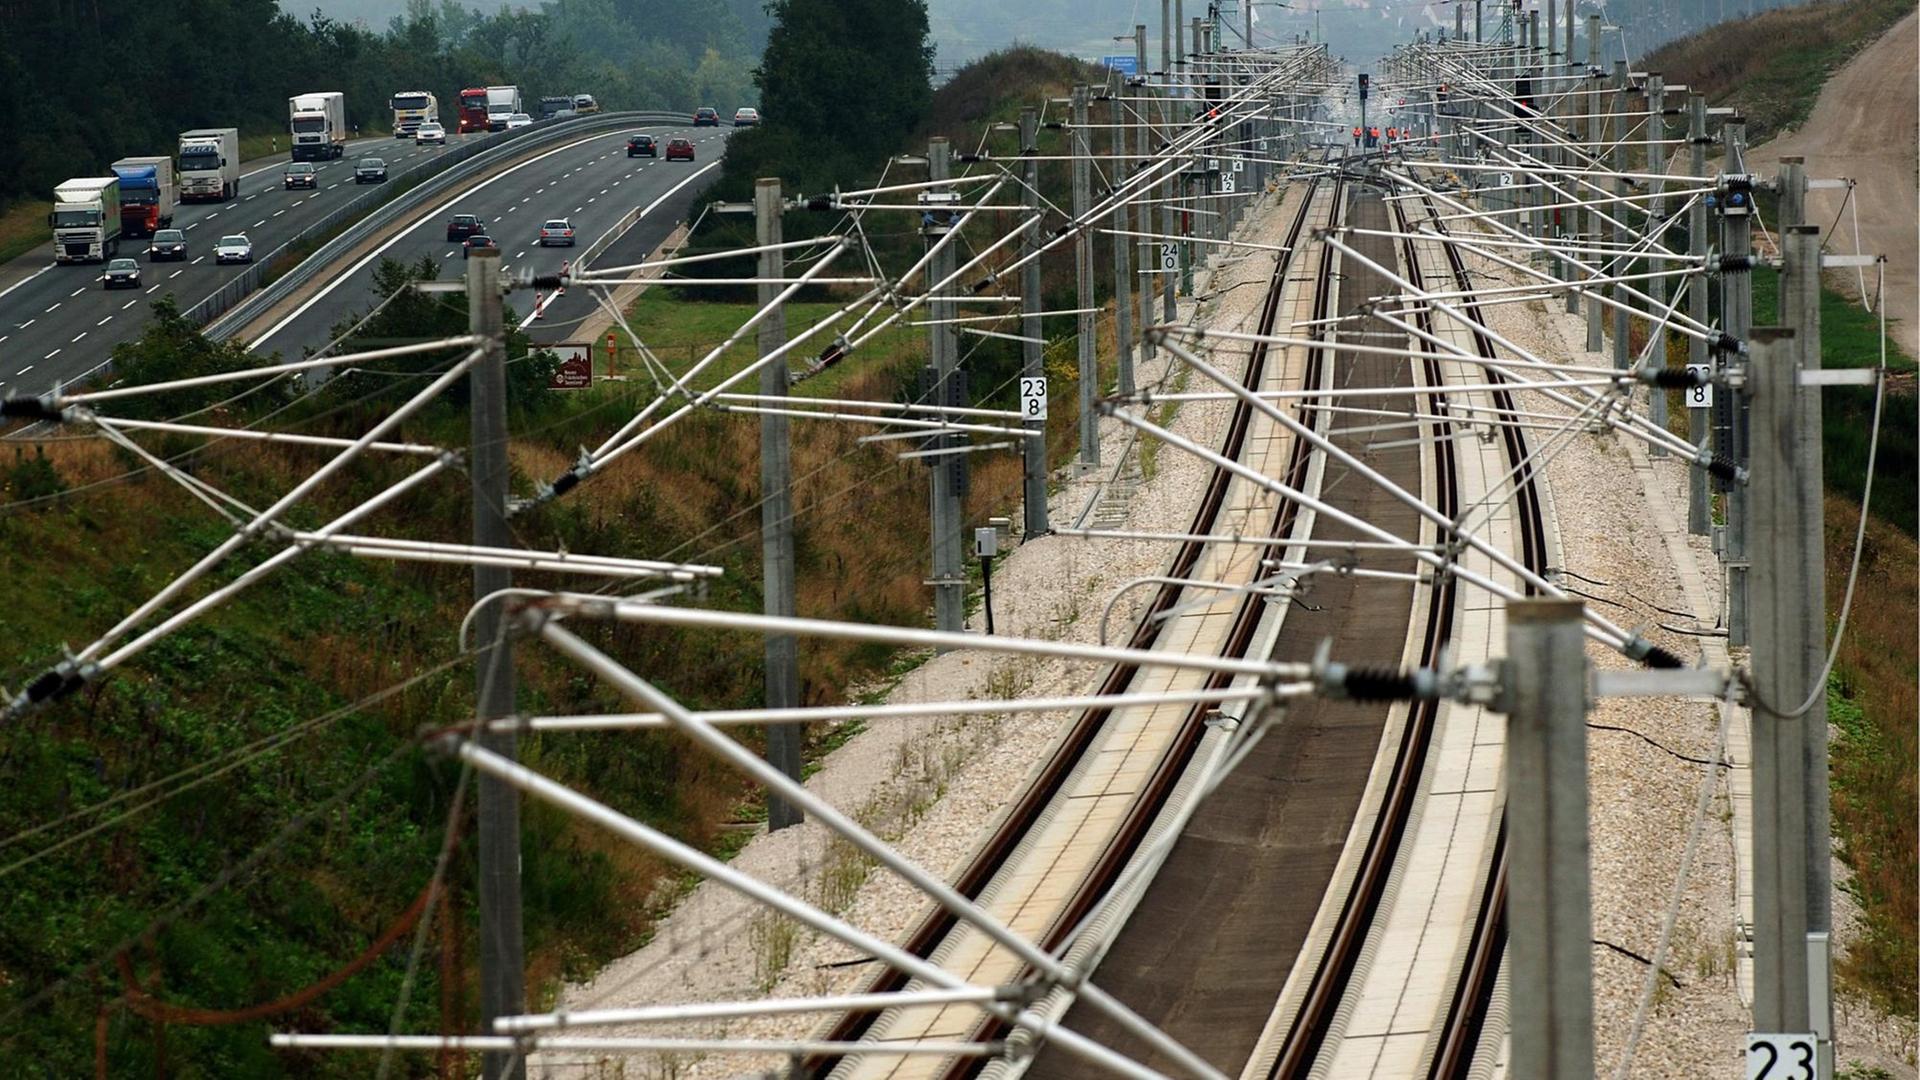 Infrastruktur - Bundesrat für Gesetzentwurf zum schnelleren Ausbau von Bahnstrecken